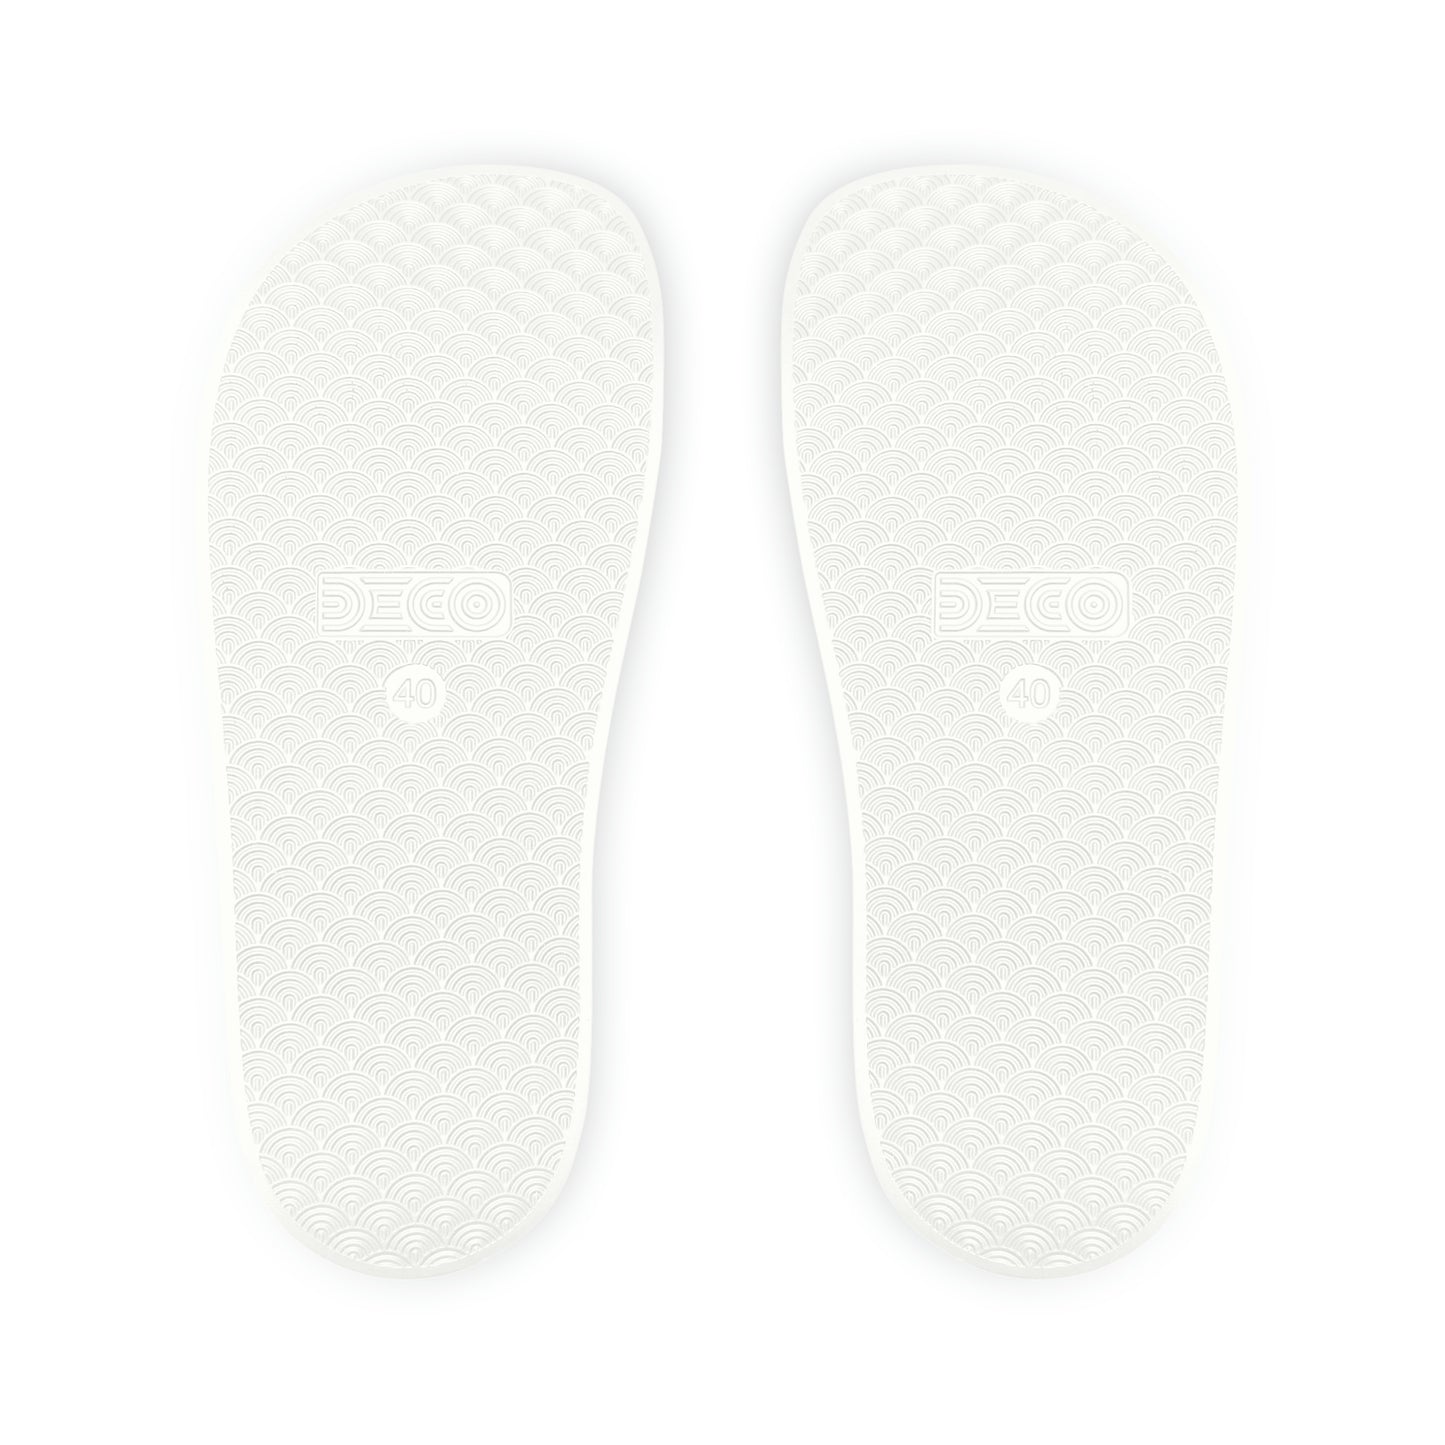 Slide Sandals - White